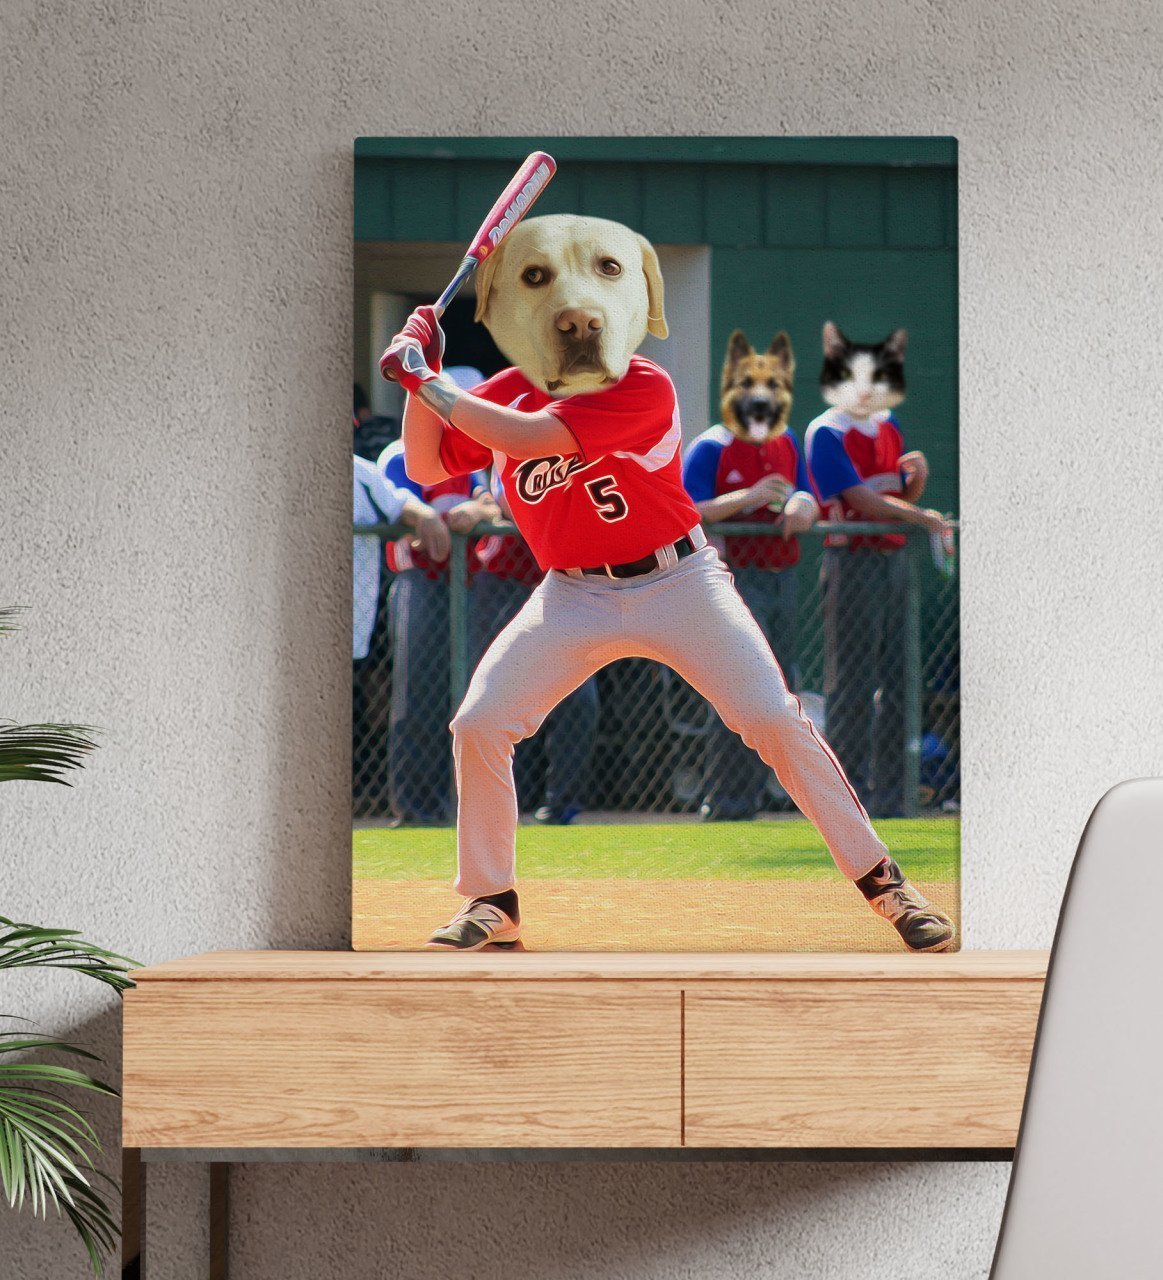 Evcil Dostlara Özel Beyzbol Oyuncusu Tasarımlı Portre Kanvas Tablo 50x70cm-3